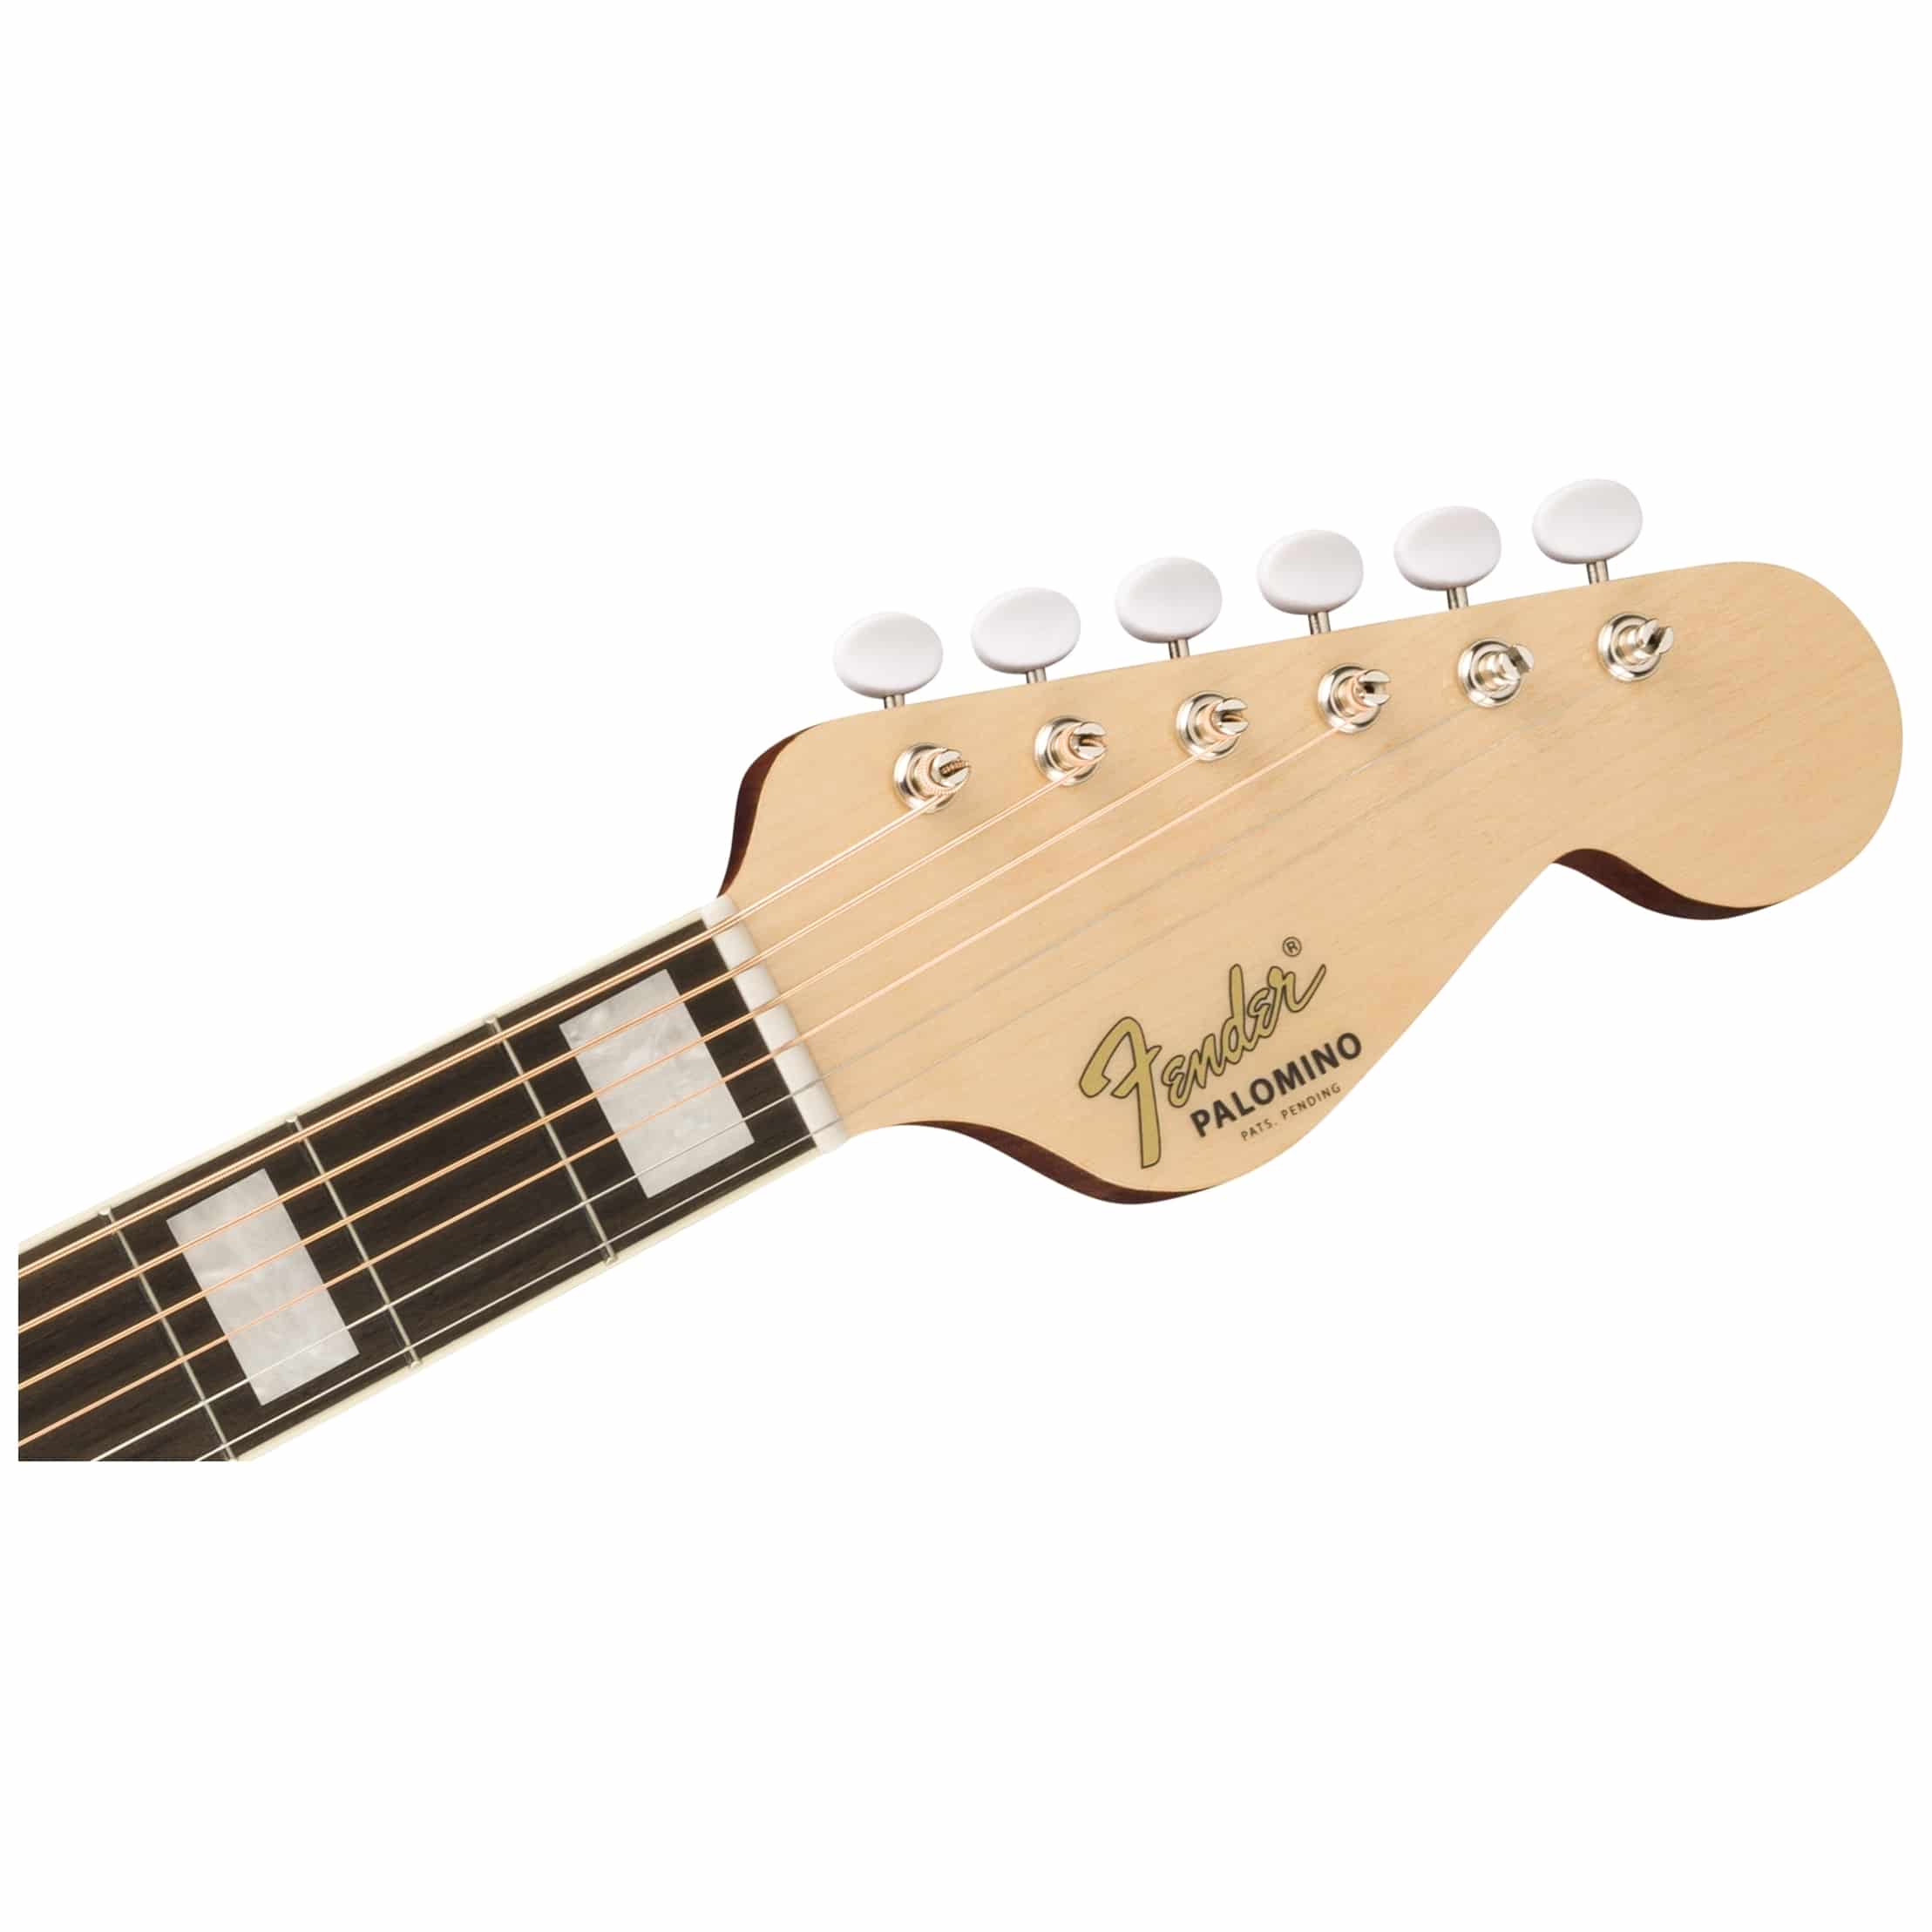 Fender Palamino Vintage SSB 6